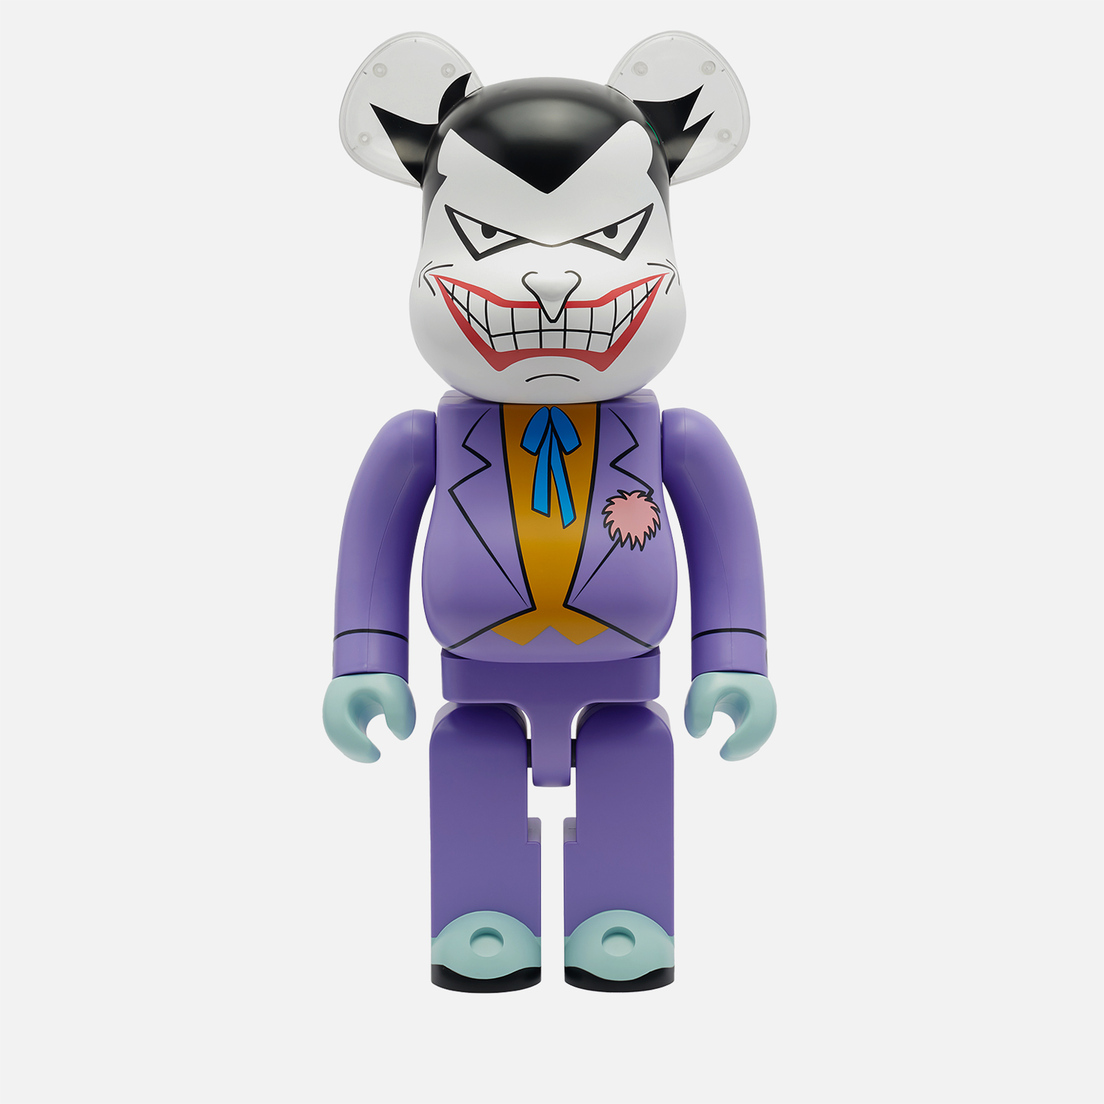 Medicom Toy Игрушка Joker The Animated Series 1000%